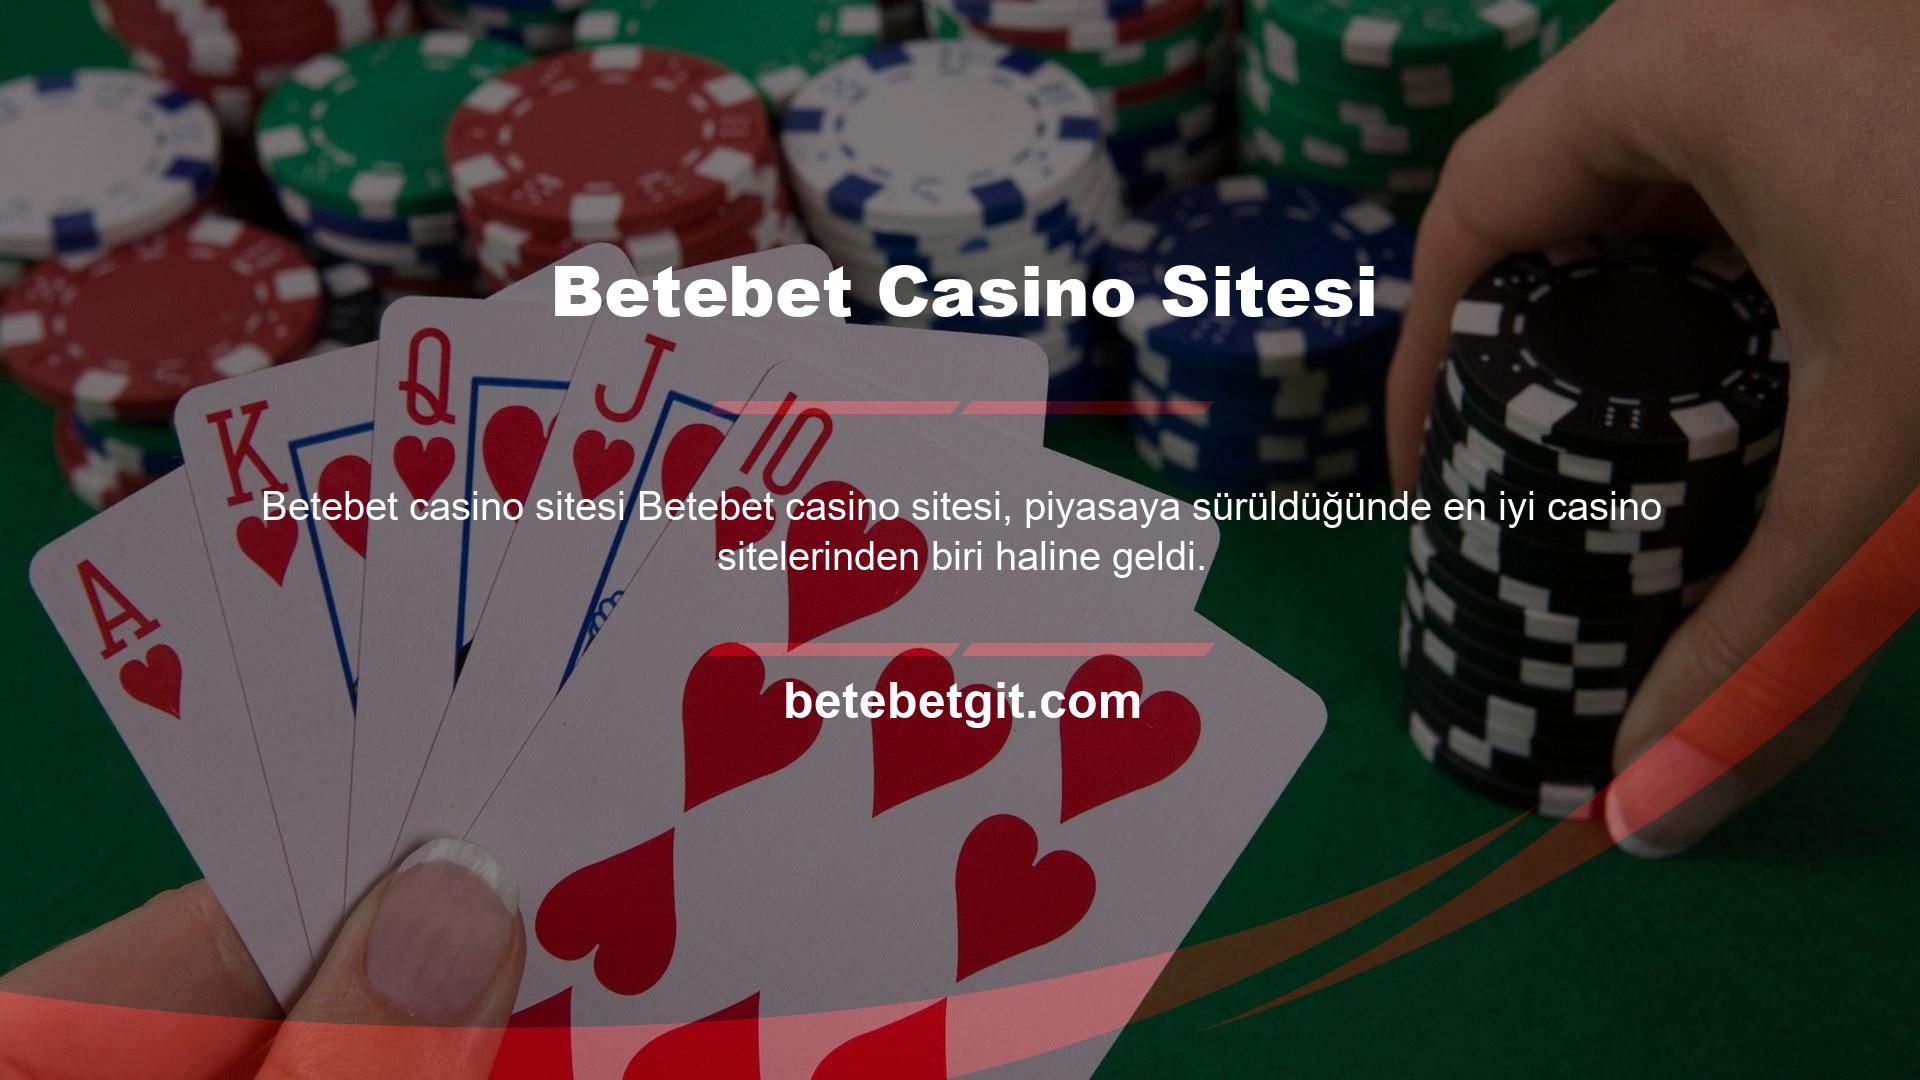 Site bir yandan casinolar ve slot makineleri için bir numaralı tercih, diğer yandan bahis ve canlı bahis için bir numaralı tercihtir